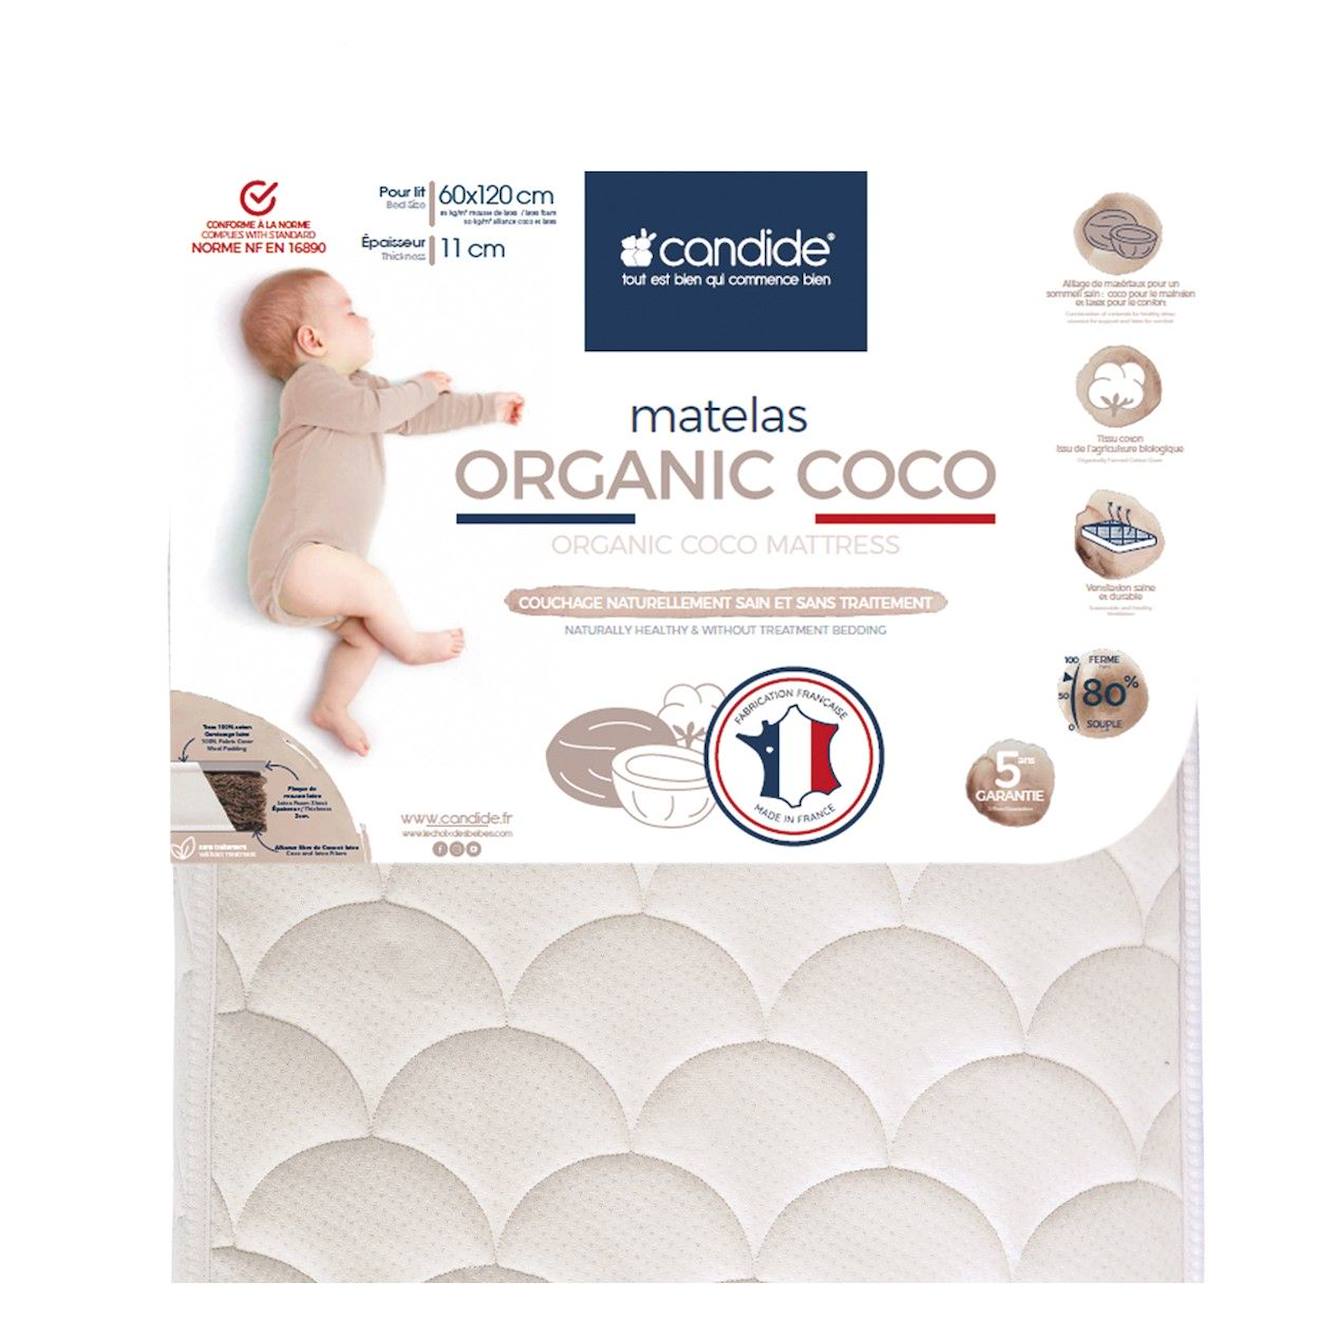 Matelas Bébé 60x120x11cm Organic Coco - Sans Traitement - Ferme - Tissu Coton Bio - Fabriqué En Fran